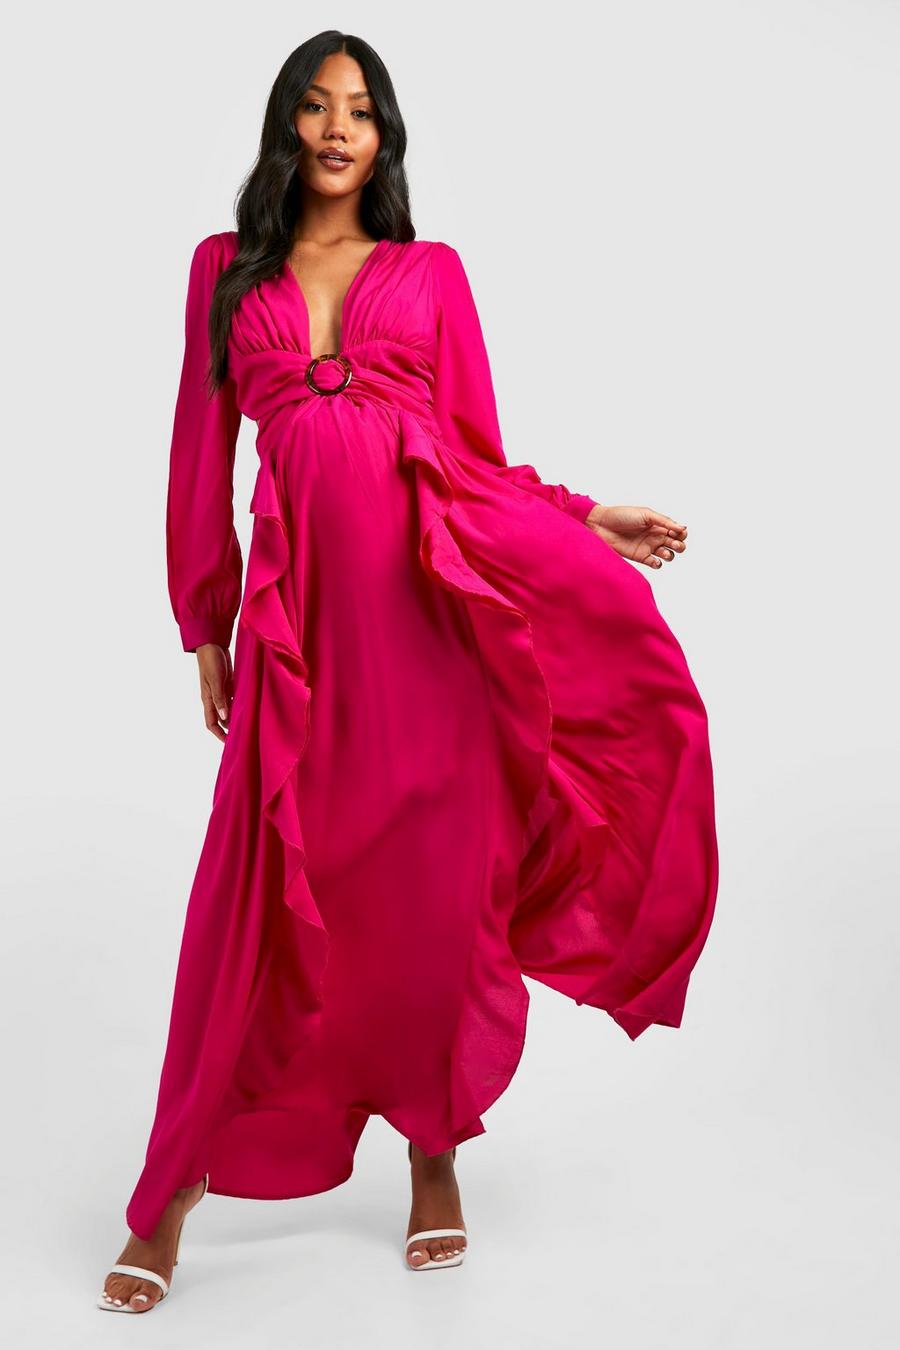 Maternité - Robe de grossesse découpée, Hot pink rose